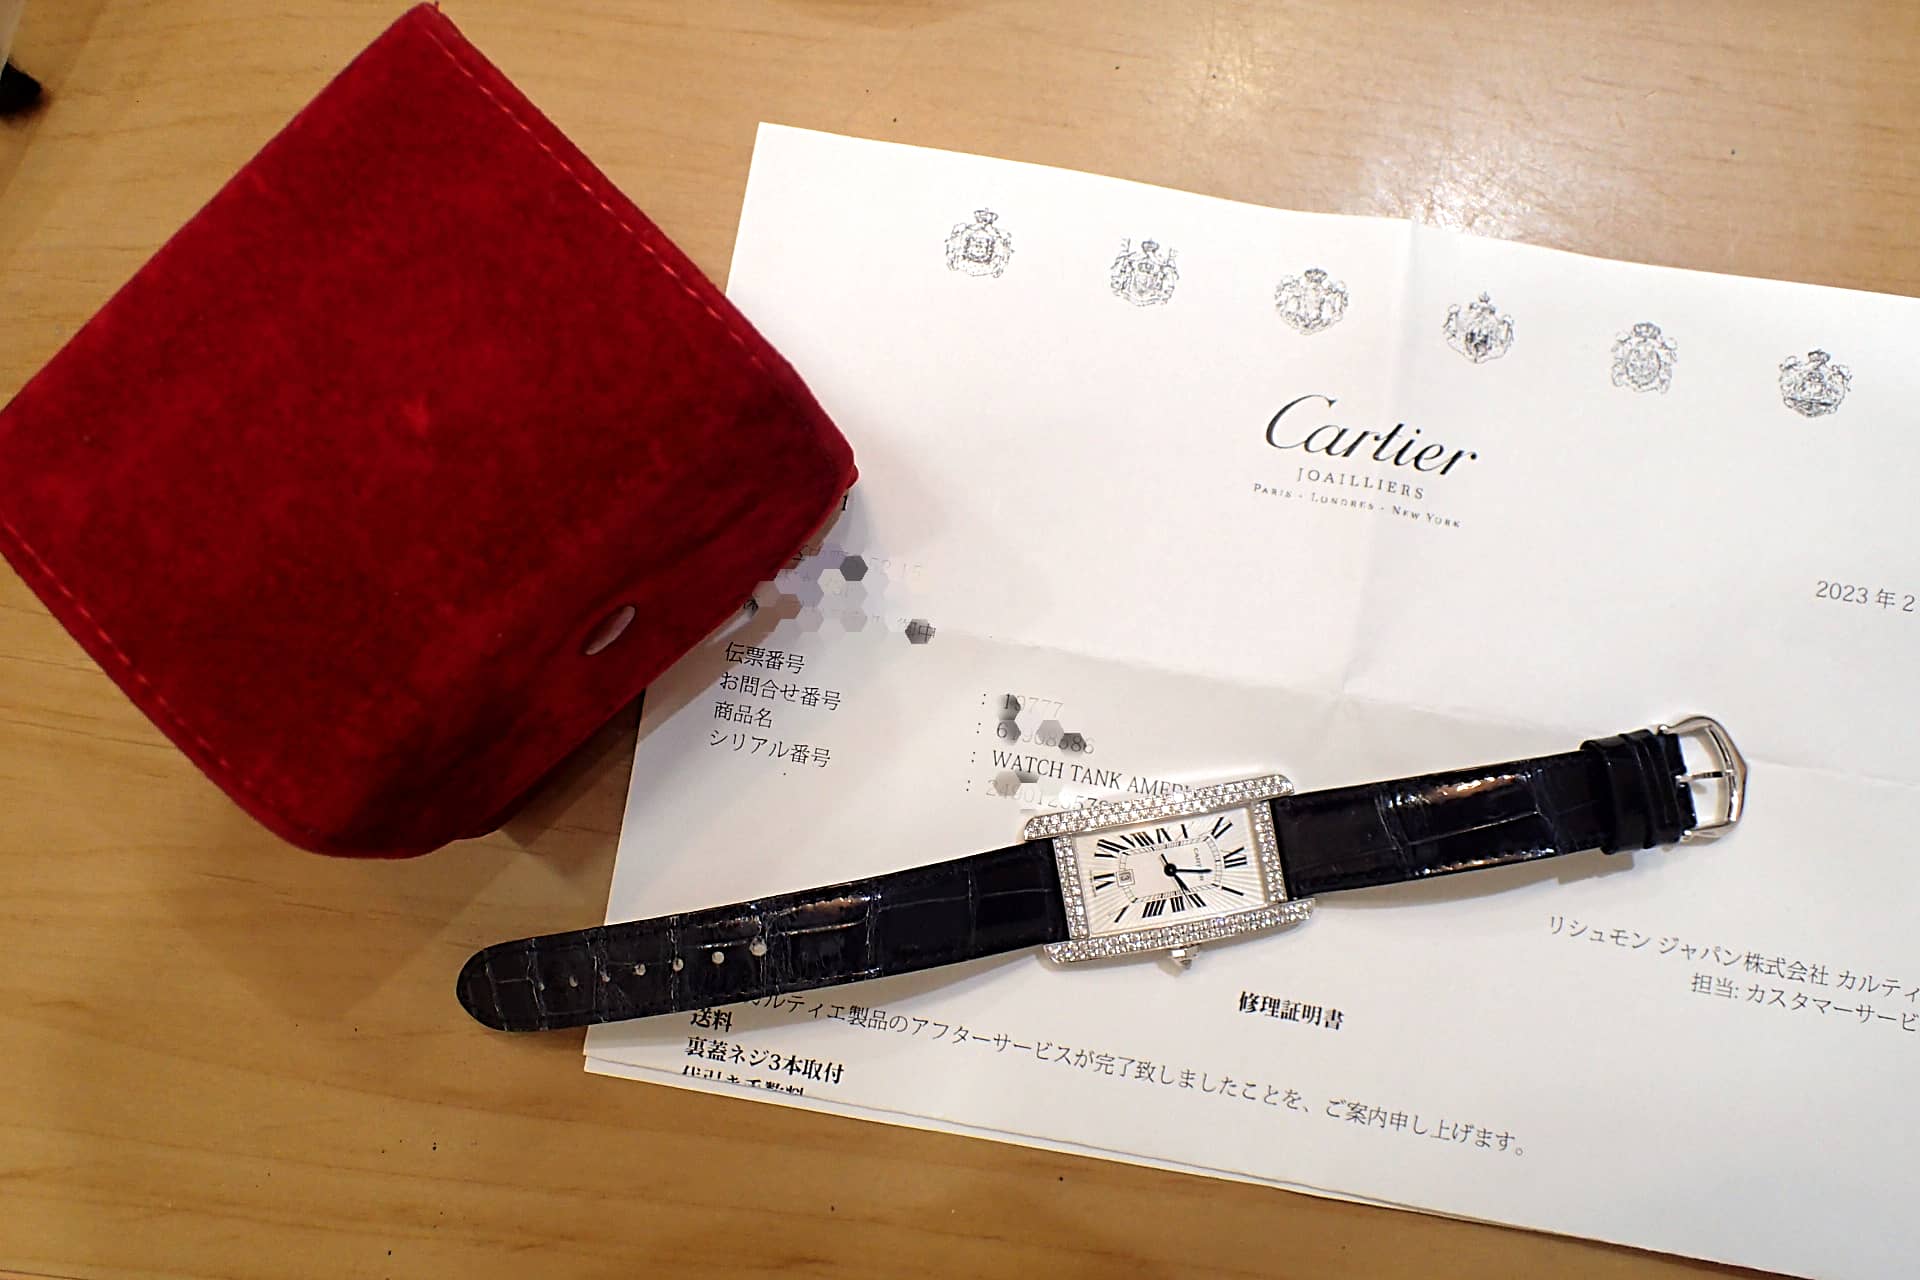 カルティエ Cartier タンク アメリカン MM ダイヤモンド K18WG WB710002